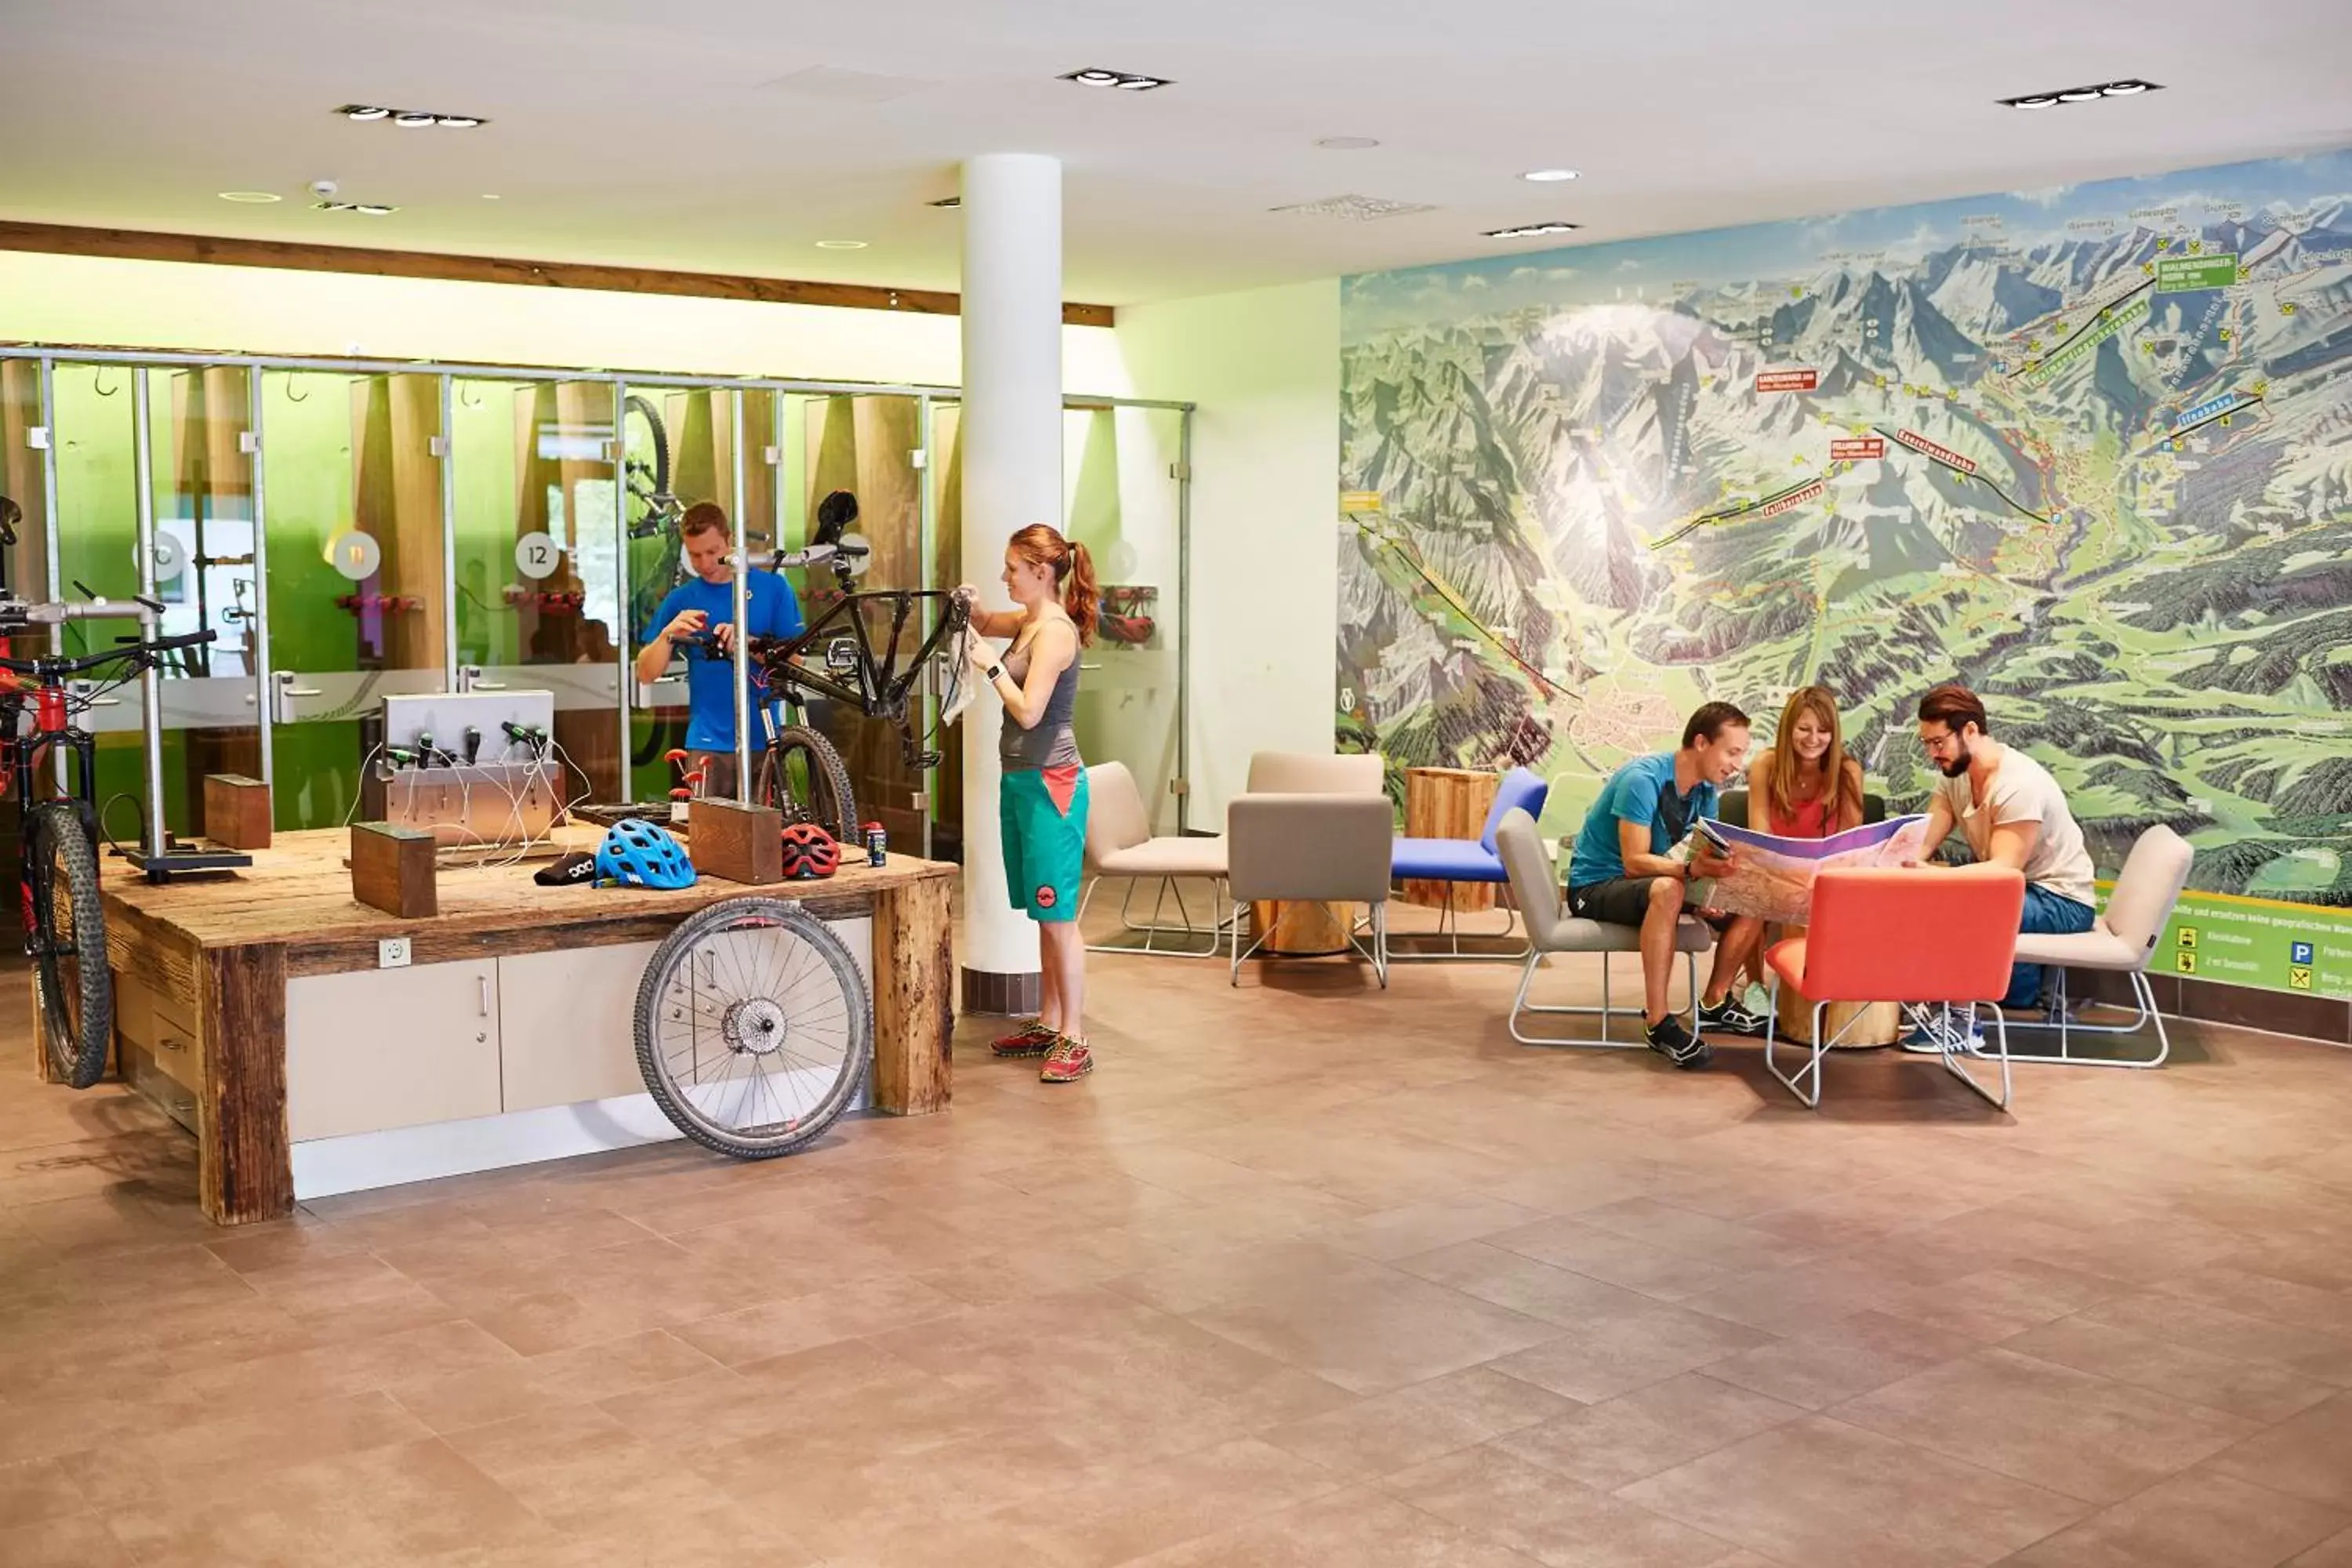 Lobby or reception in Explorer Hotel Neuschwanstein